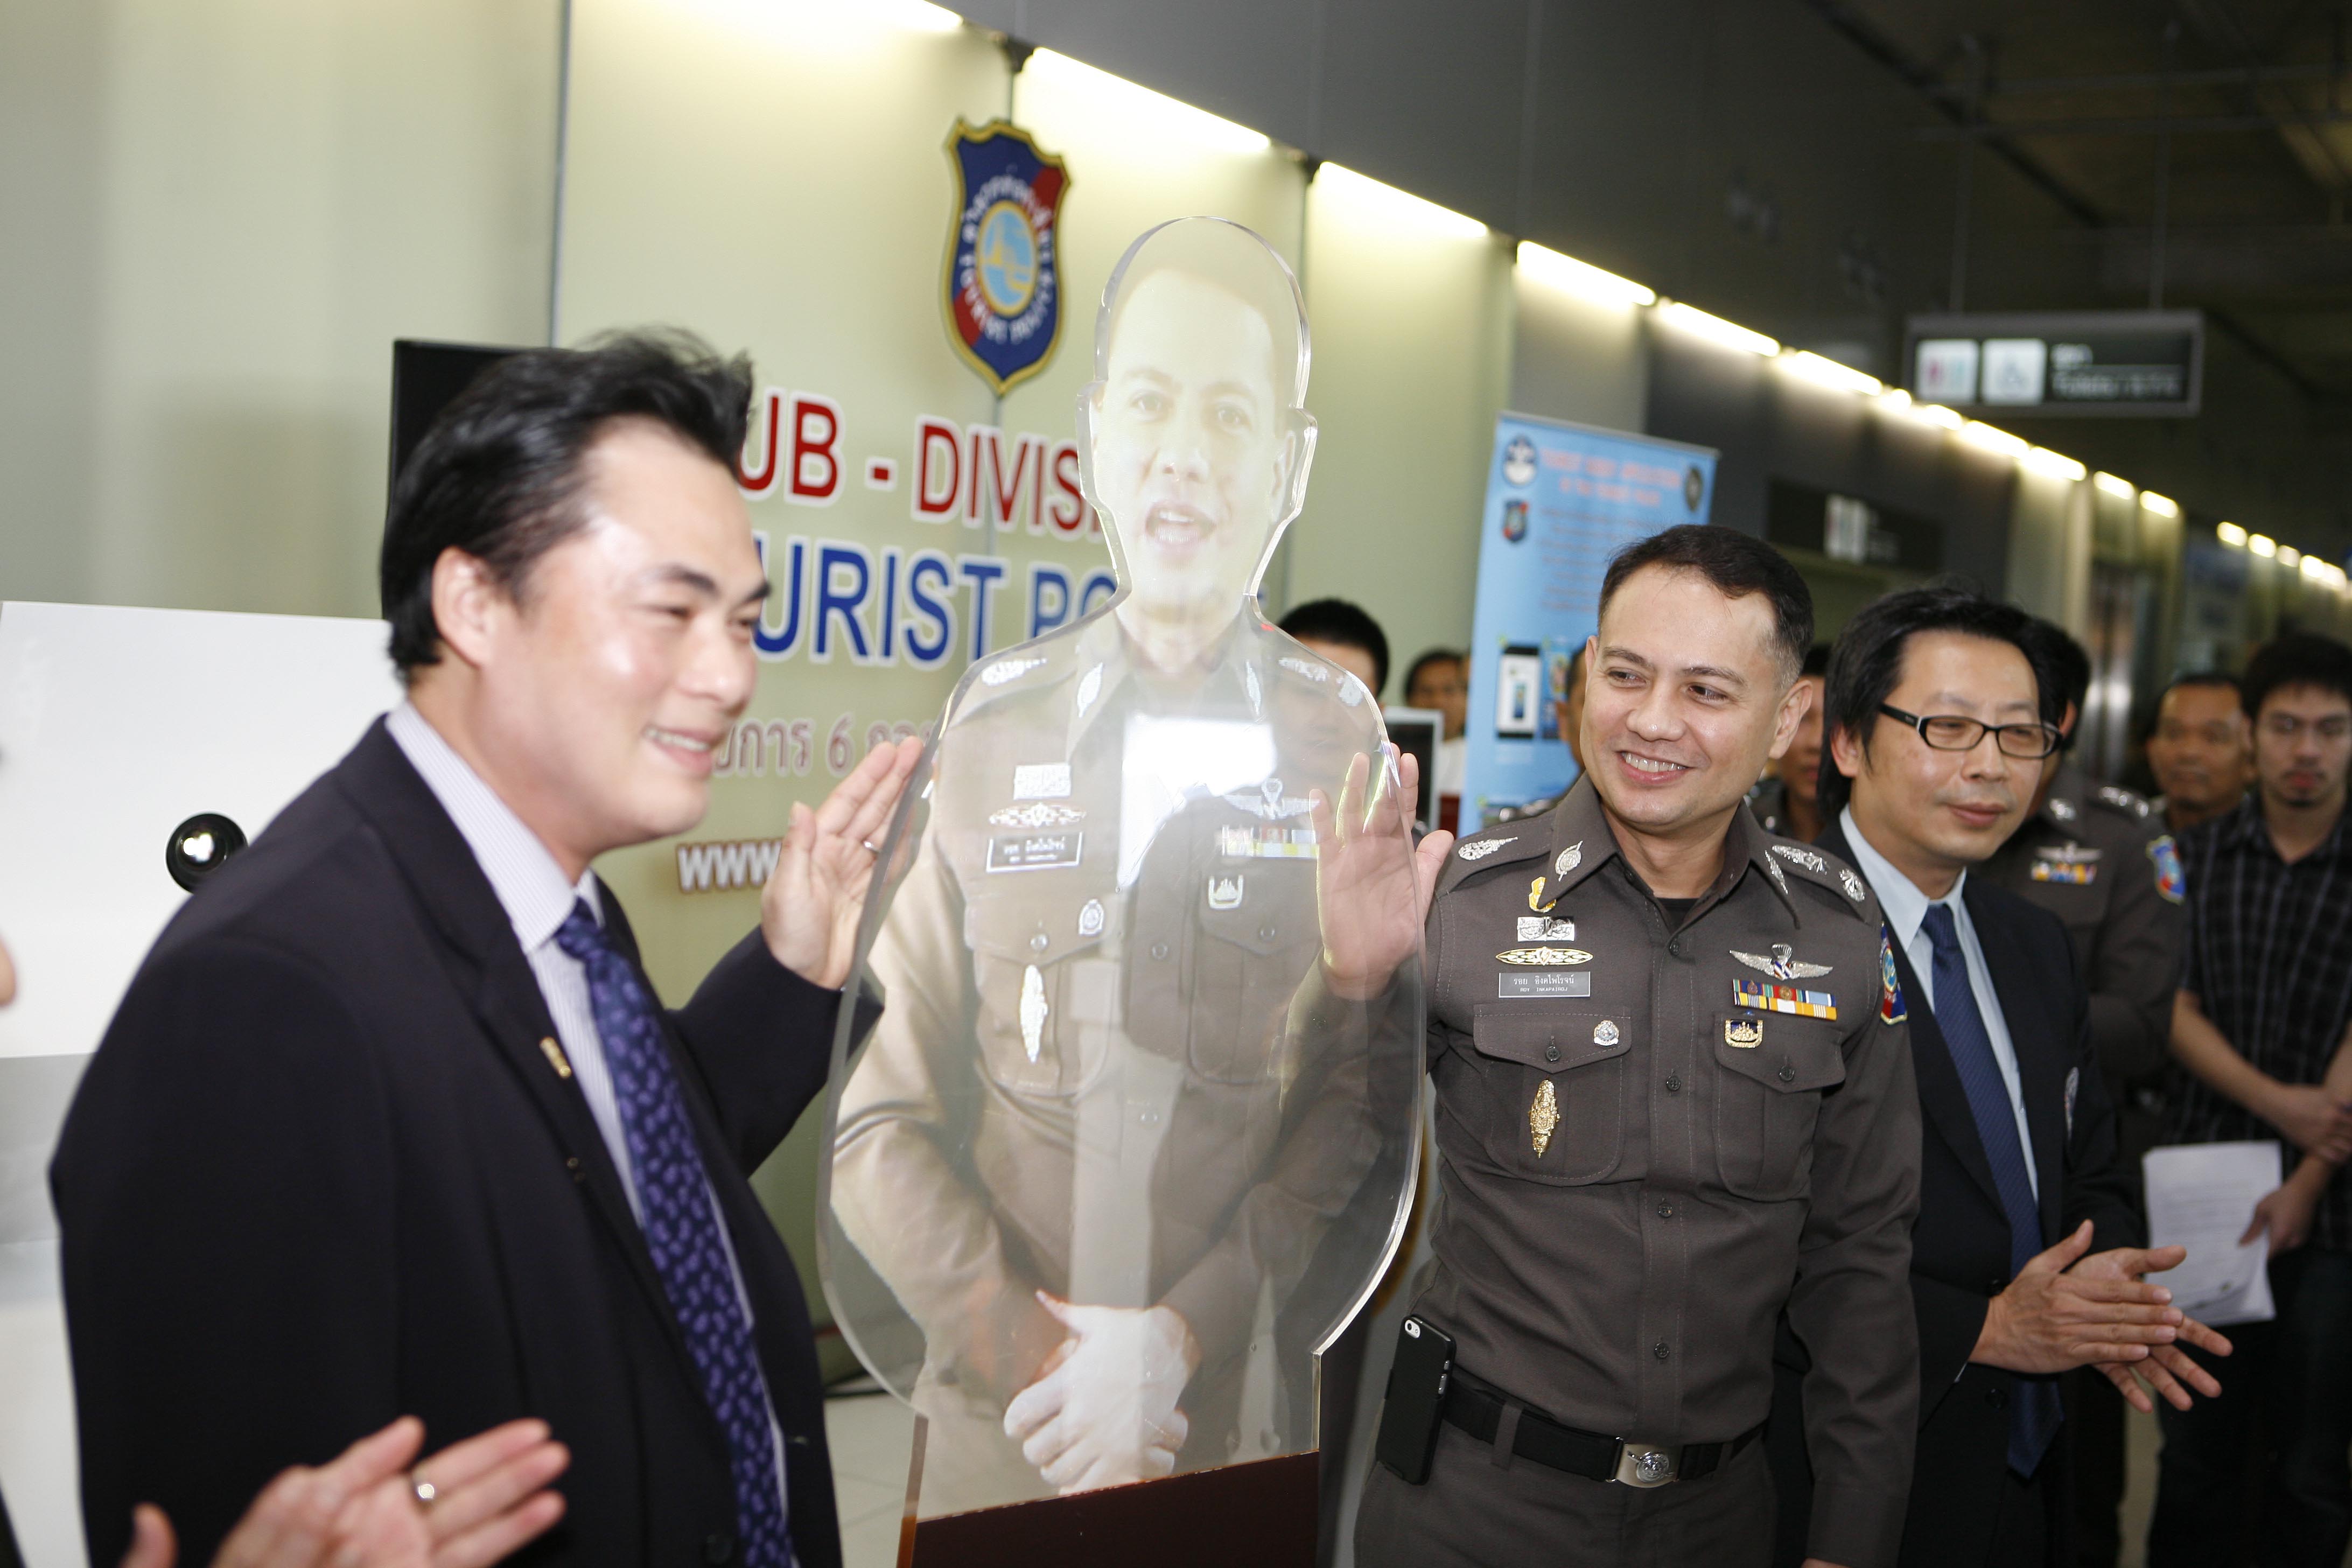 ตำรวจท่องเที่ยวไทยล้ำหน้าเปิดตัว ผู้ช่วยเสมือนจริงอัจฉริยะ